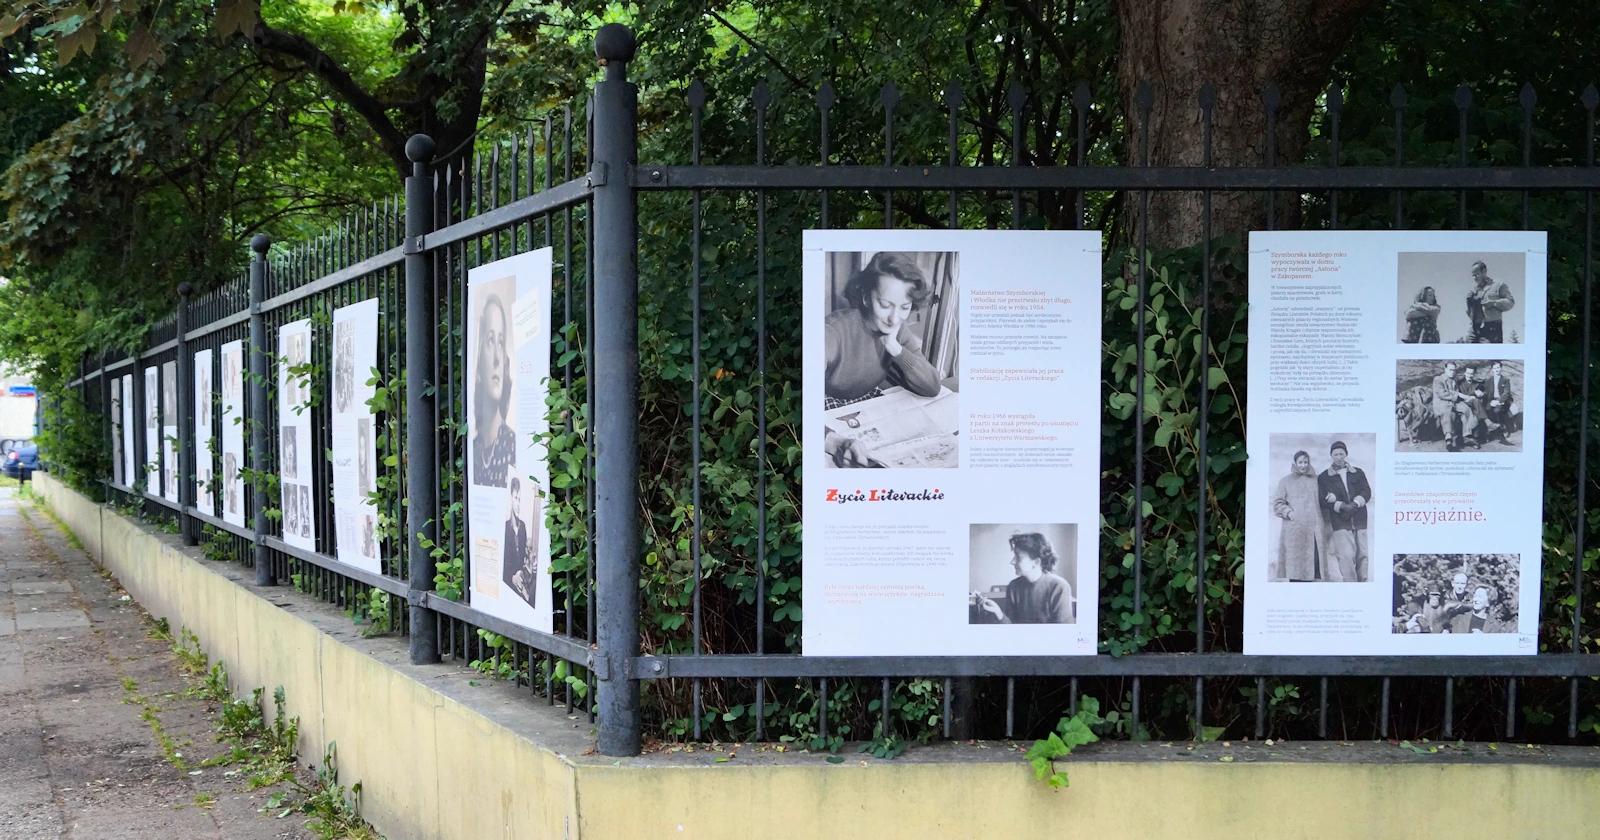 Róg parku tonącego w zieleni. Na prawym ogrodzeniu dwie duże plansze ze zdjęciami i jakimś tekstem. Na lewym dziewięć plansz wystawy o Szymborskiej.